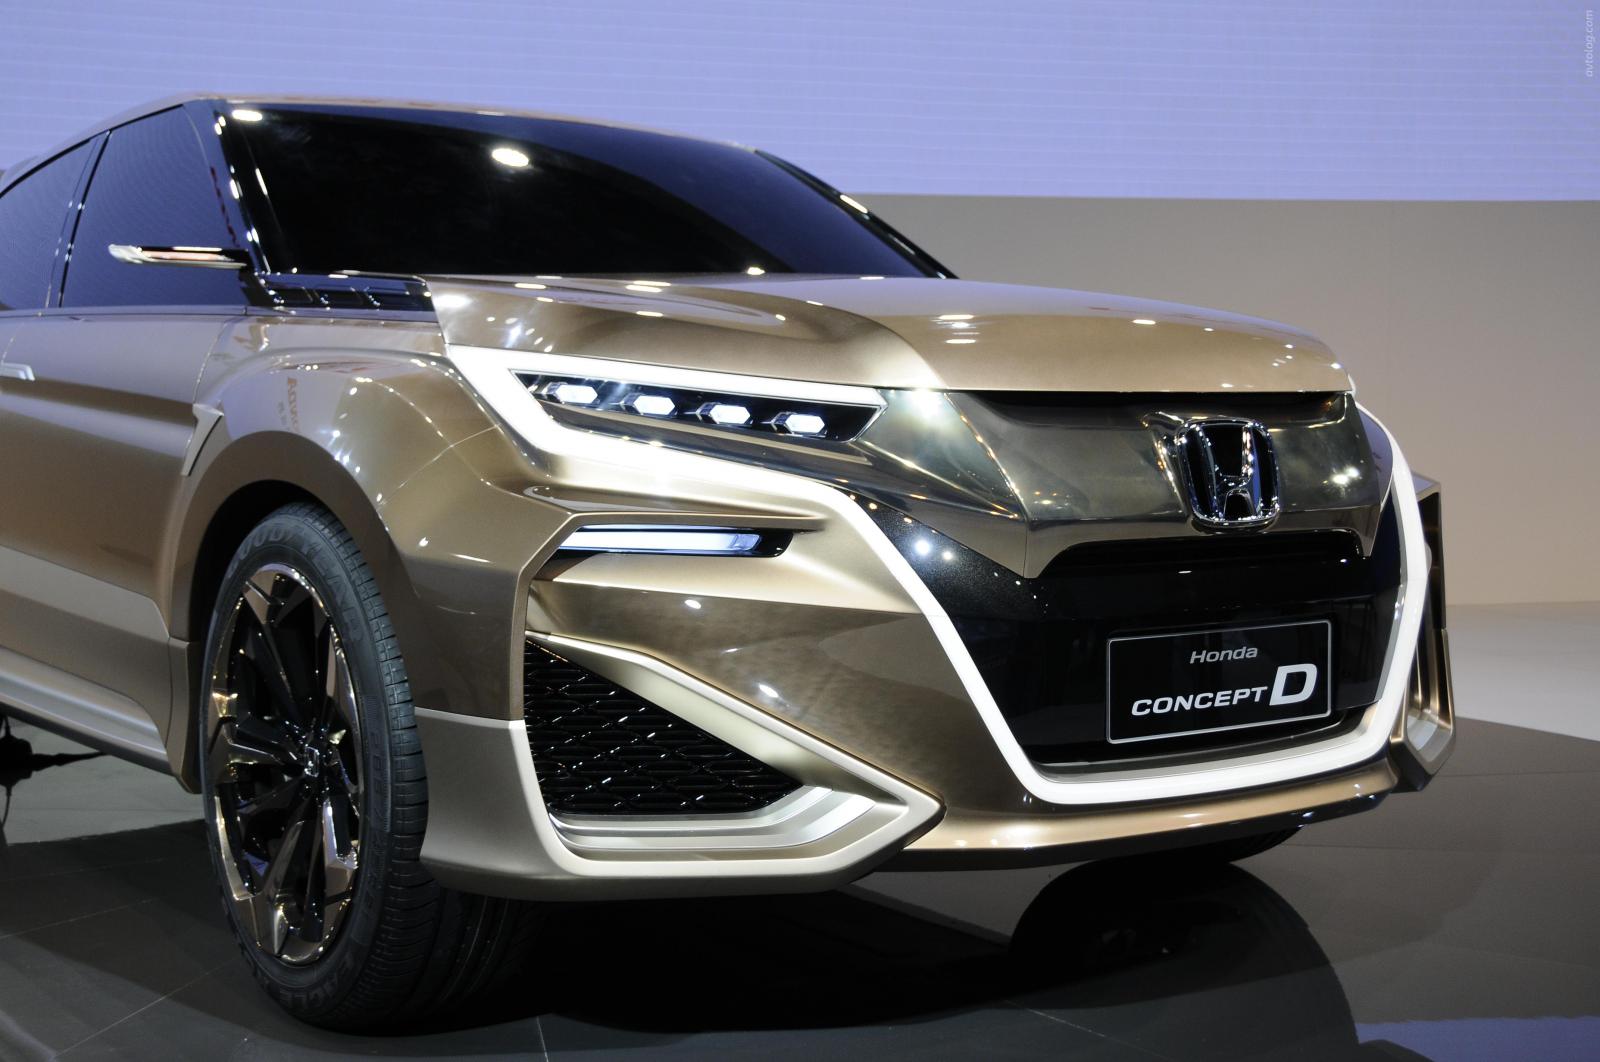 Honda удивила новой модельюь - Concept D